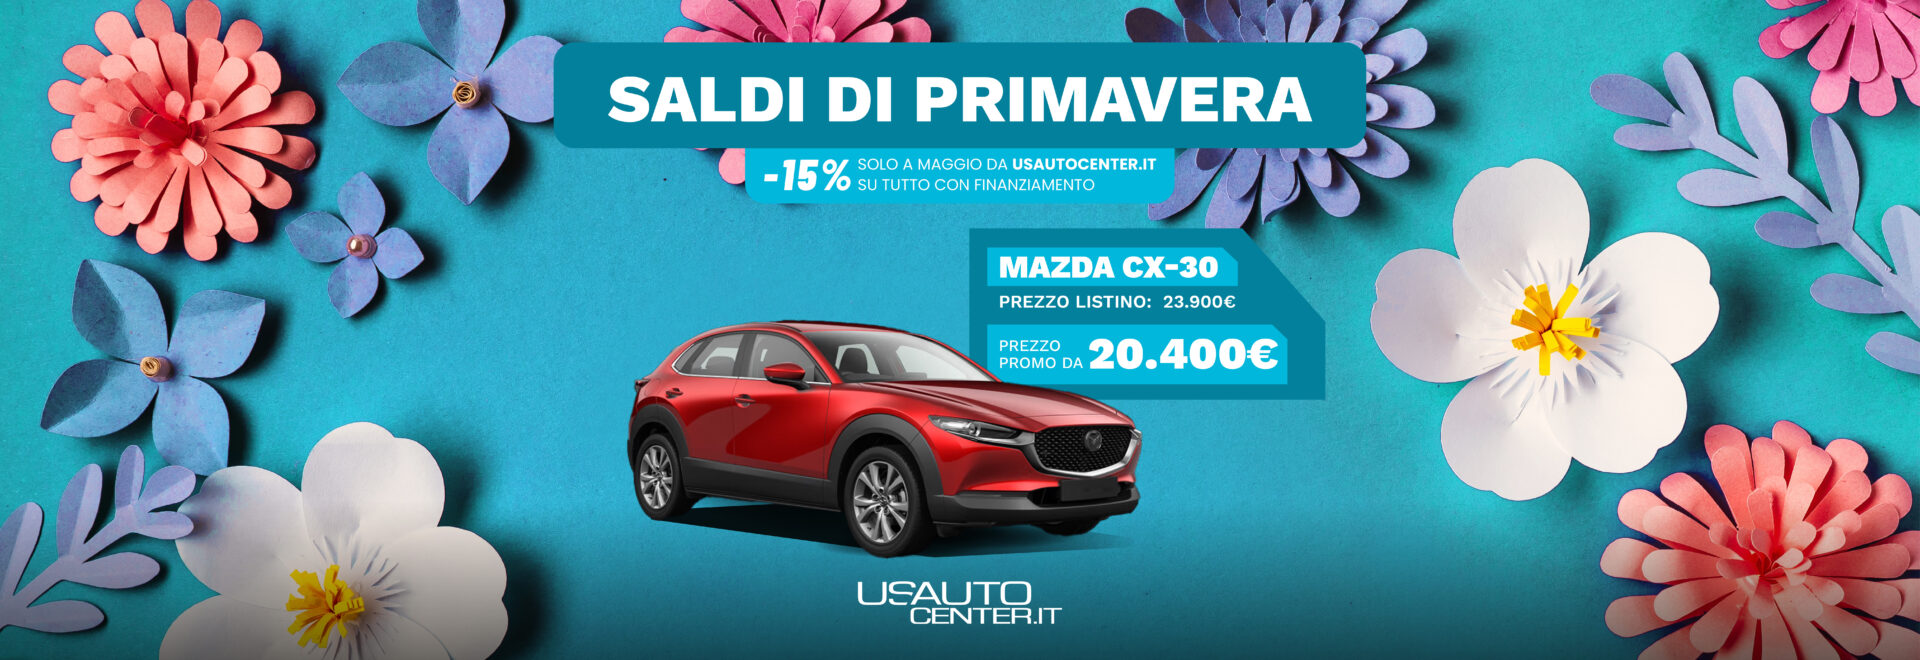 USAUTO_Promo_Saldi di Primavera_Mazda_2667x917